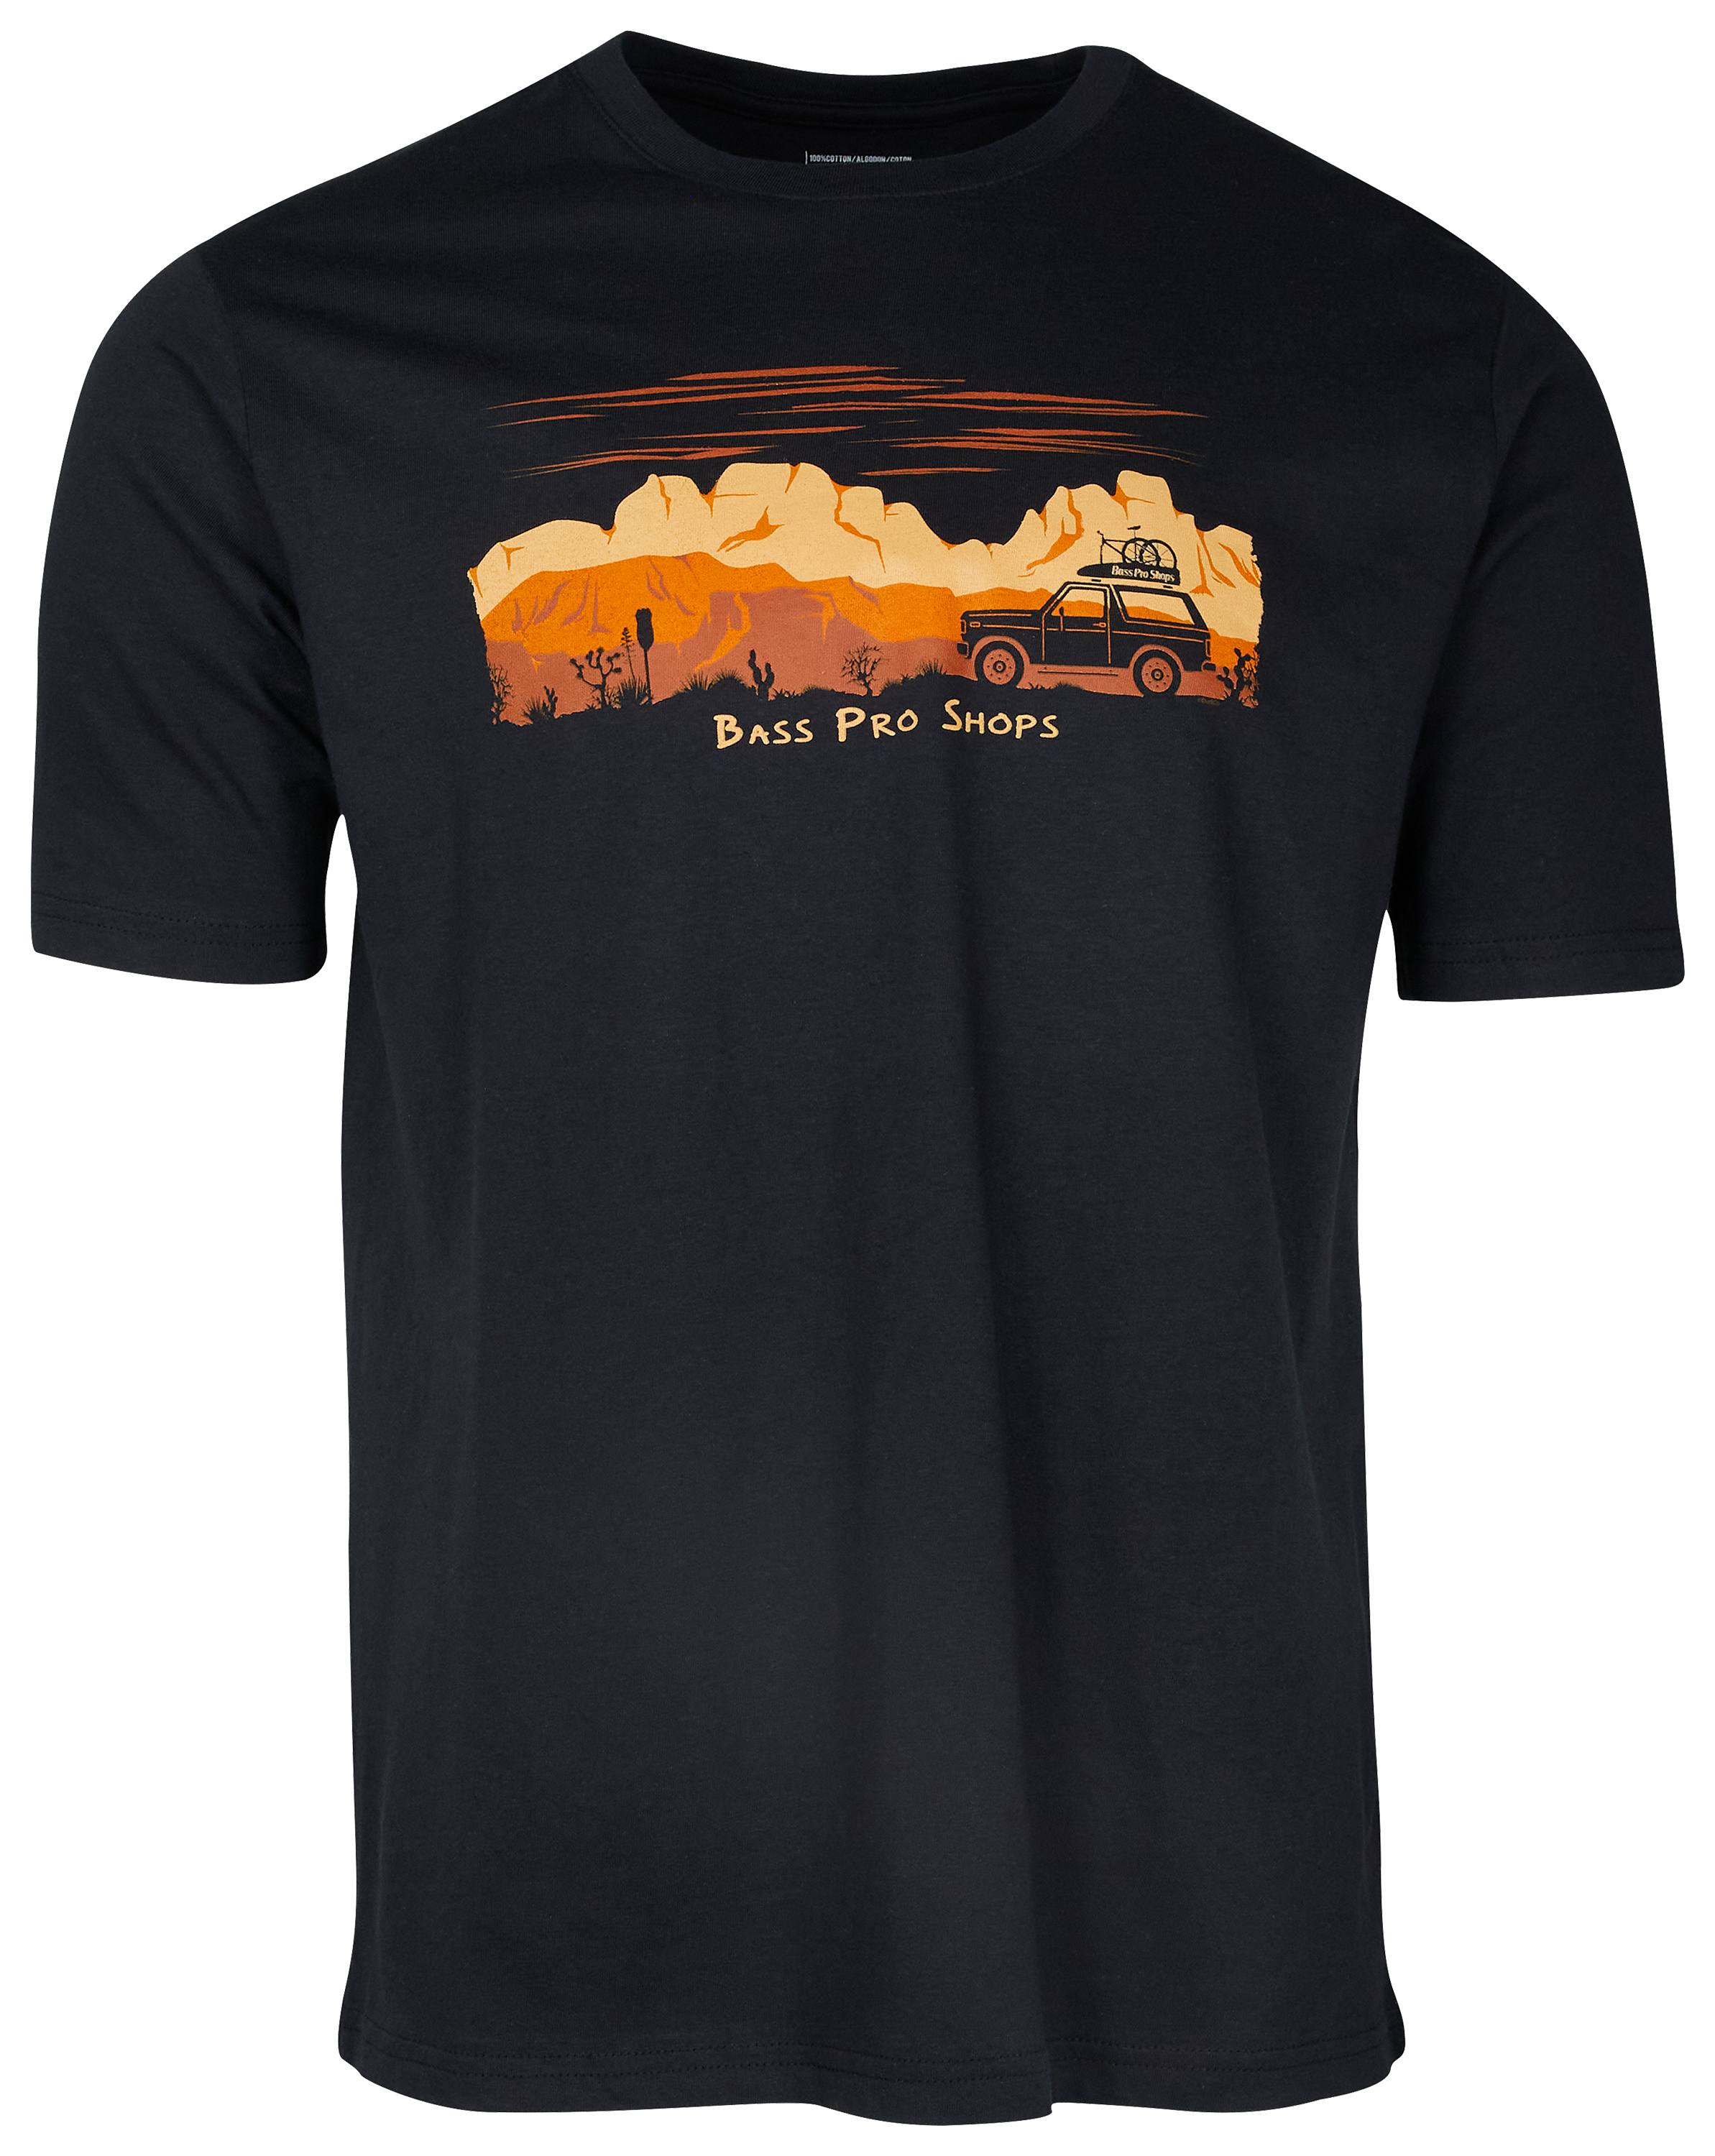 Bass Pro Shops Southwest Tour Short-Sleeve T-Shirt for Men